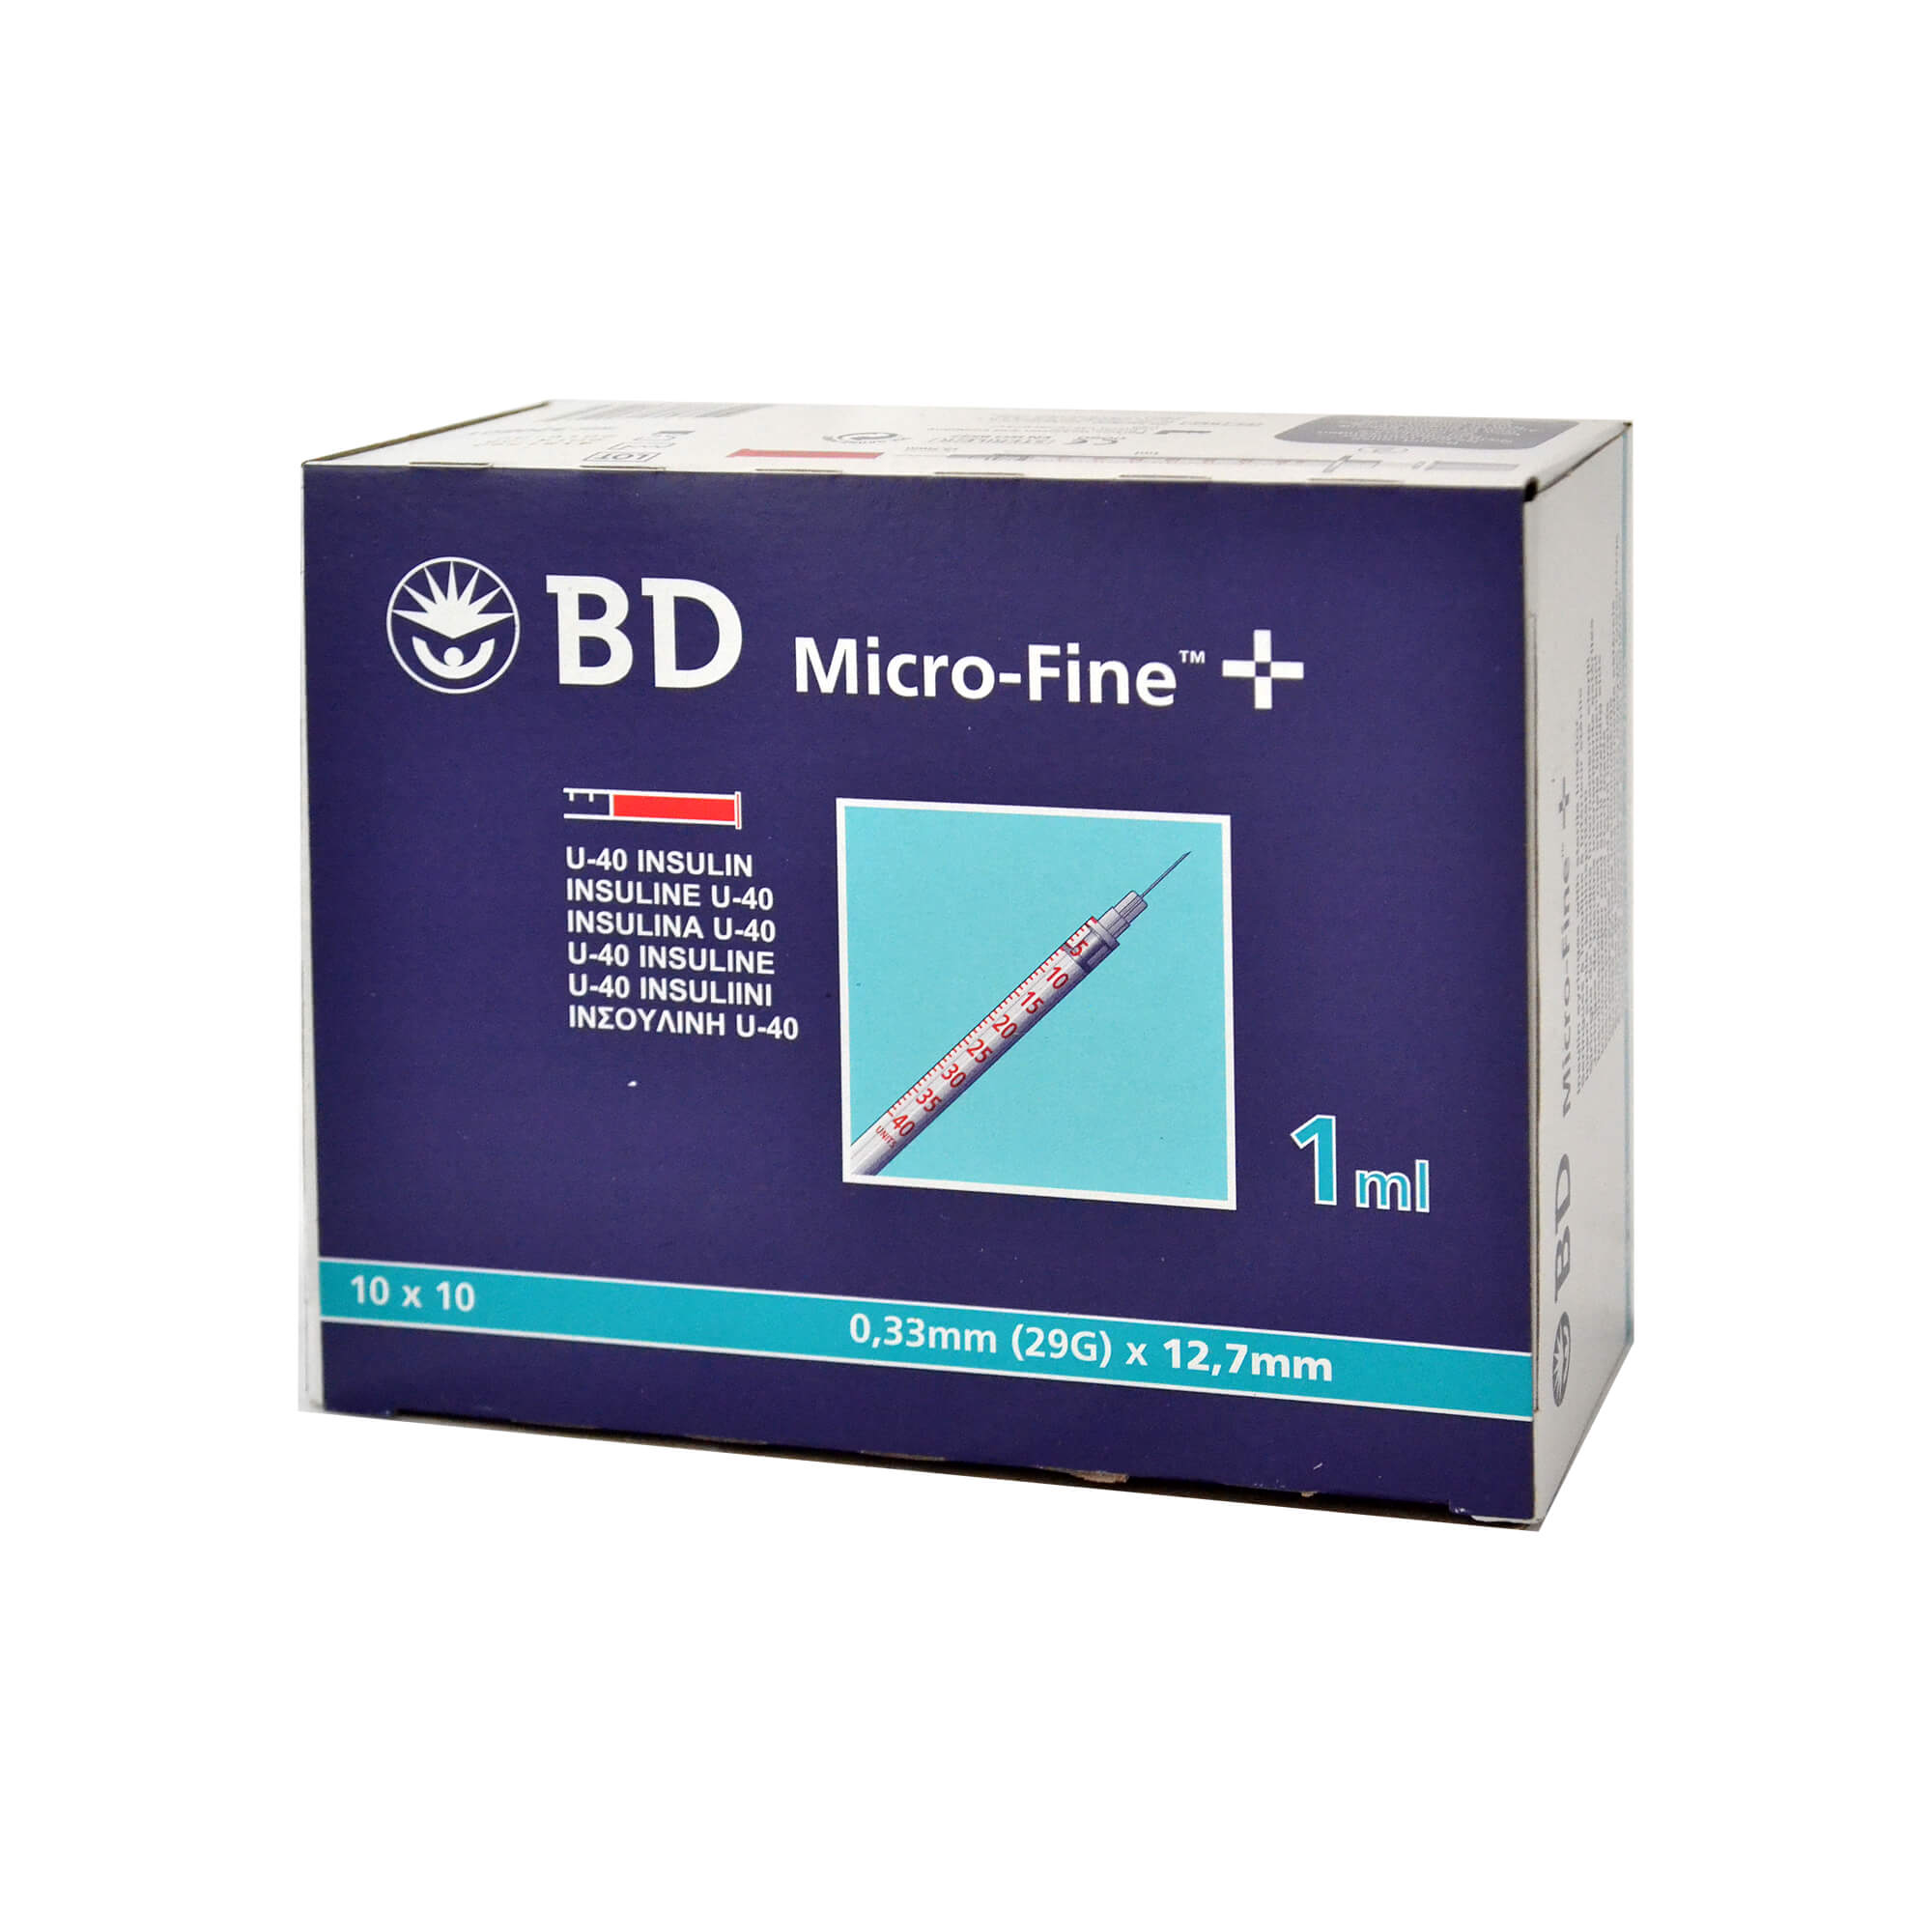 BD Micro-Fine+ Insulinspritzen 1,0 ml für U40-Insuline, Nadellänge: 12,7 mm, Nadelstärke: 0,33 mm.